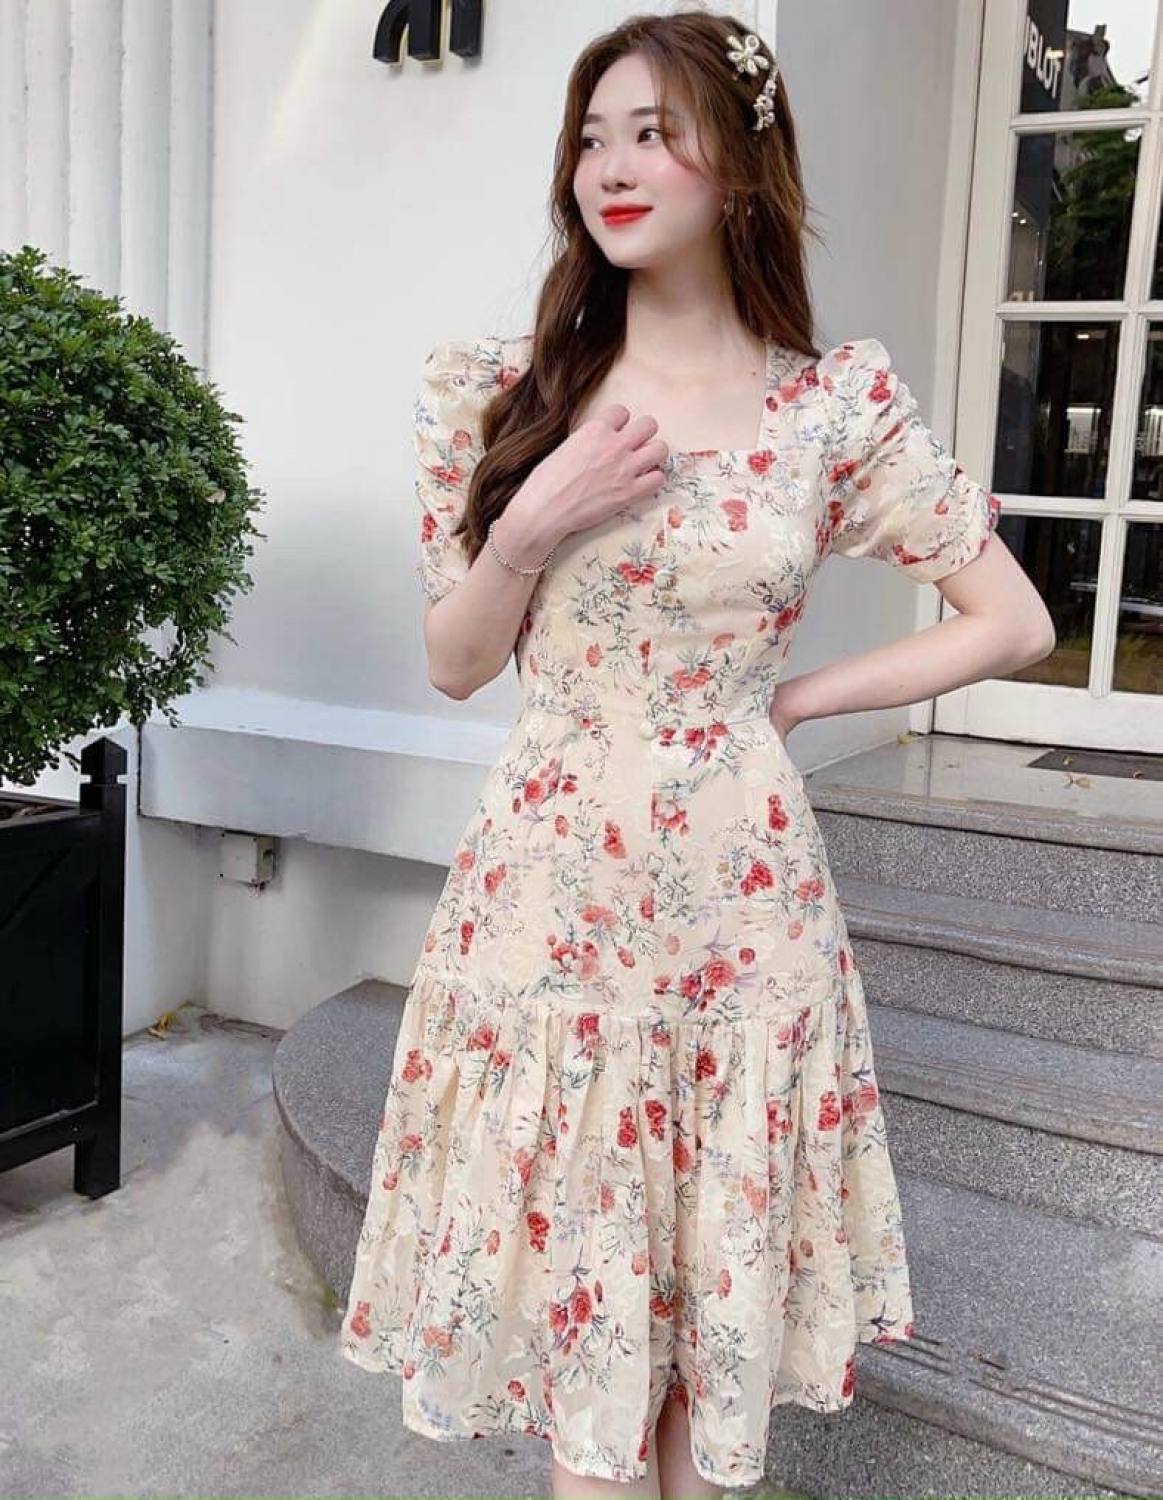 Mua Váy Hoa Nhí Dáng Xuông Tay Phồng Đầm Hoa Đỏ Dáng Dài Siêu Xinh Có Ảnh  Thật Kèm Video  Tiki